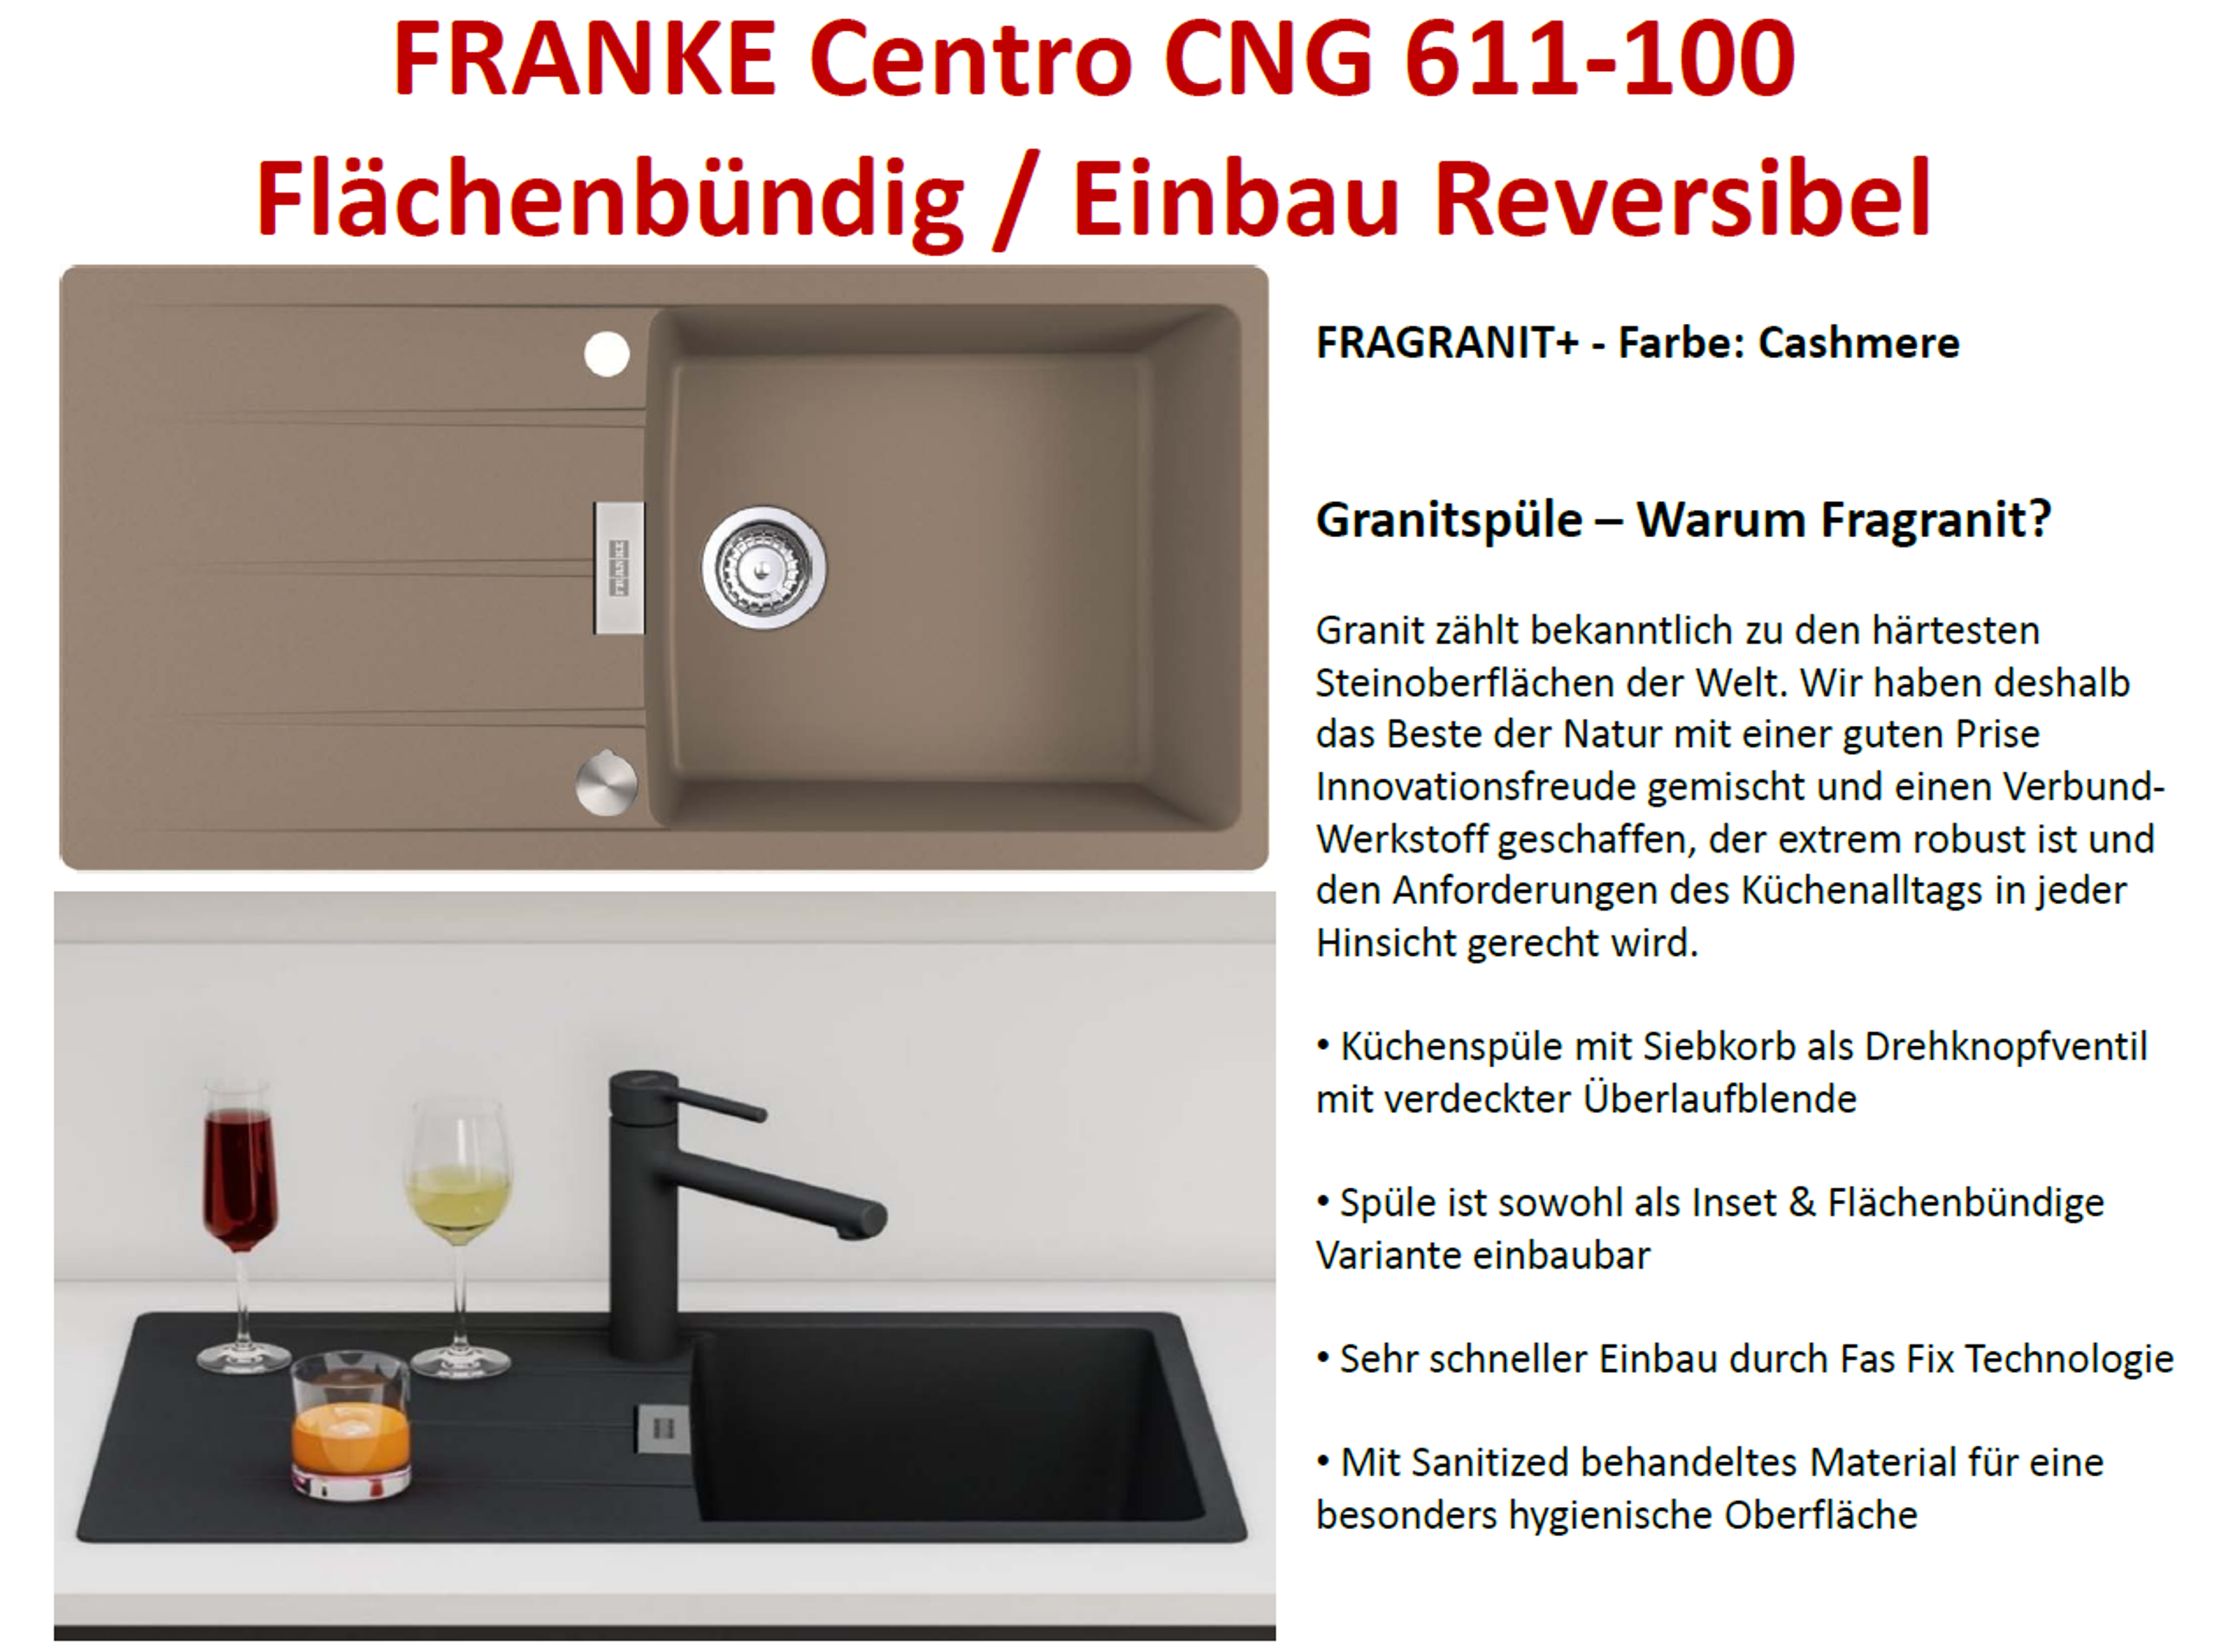 FRANKE CENTRO CNG 611-100 online kaufen